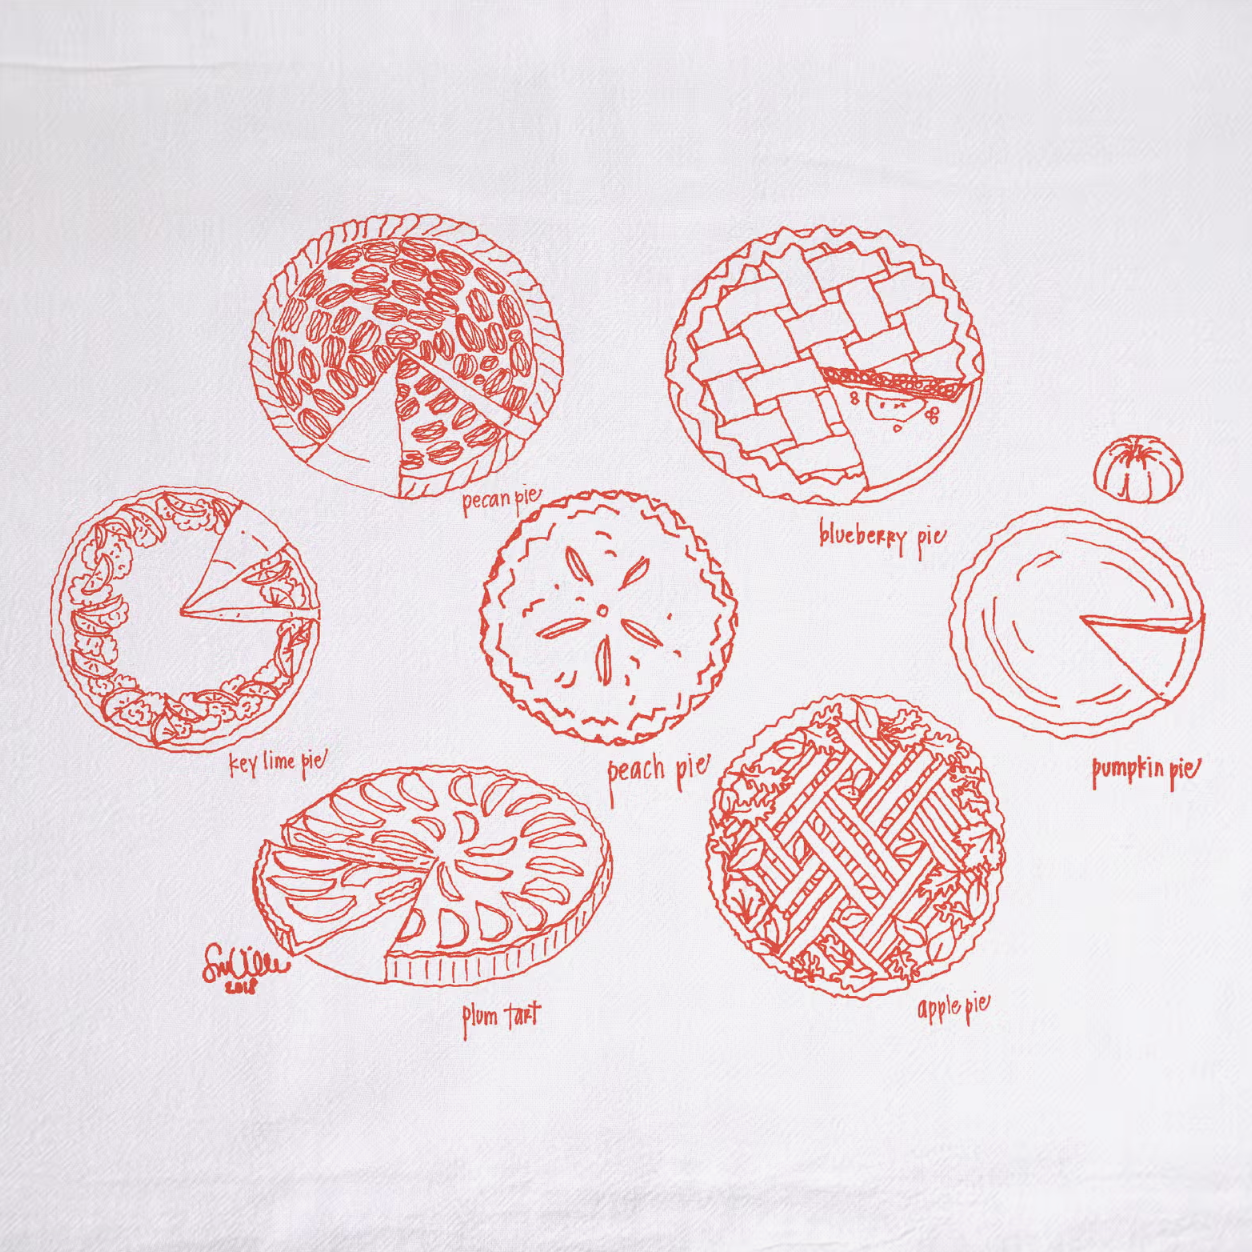 Pie drawings on tea towel